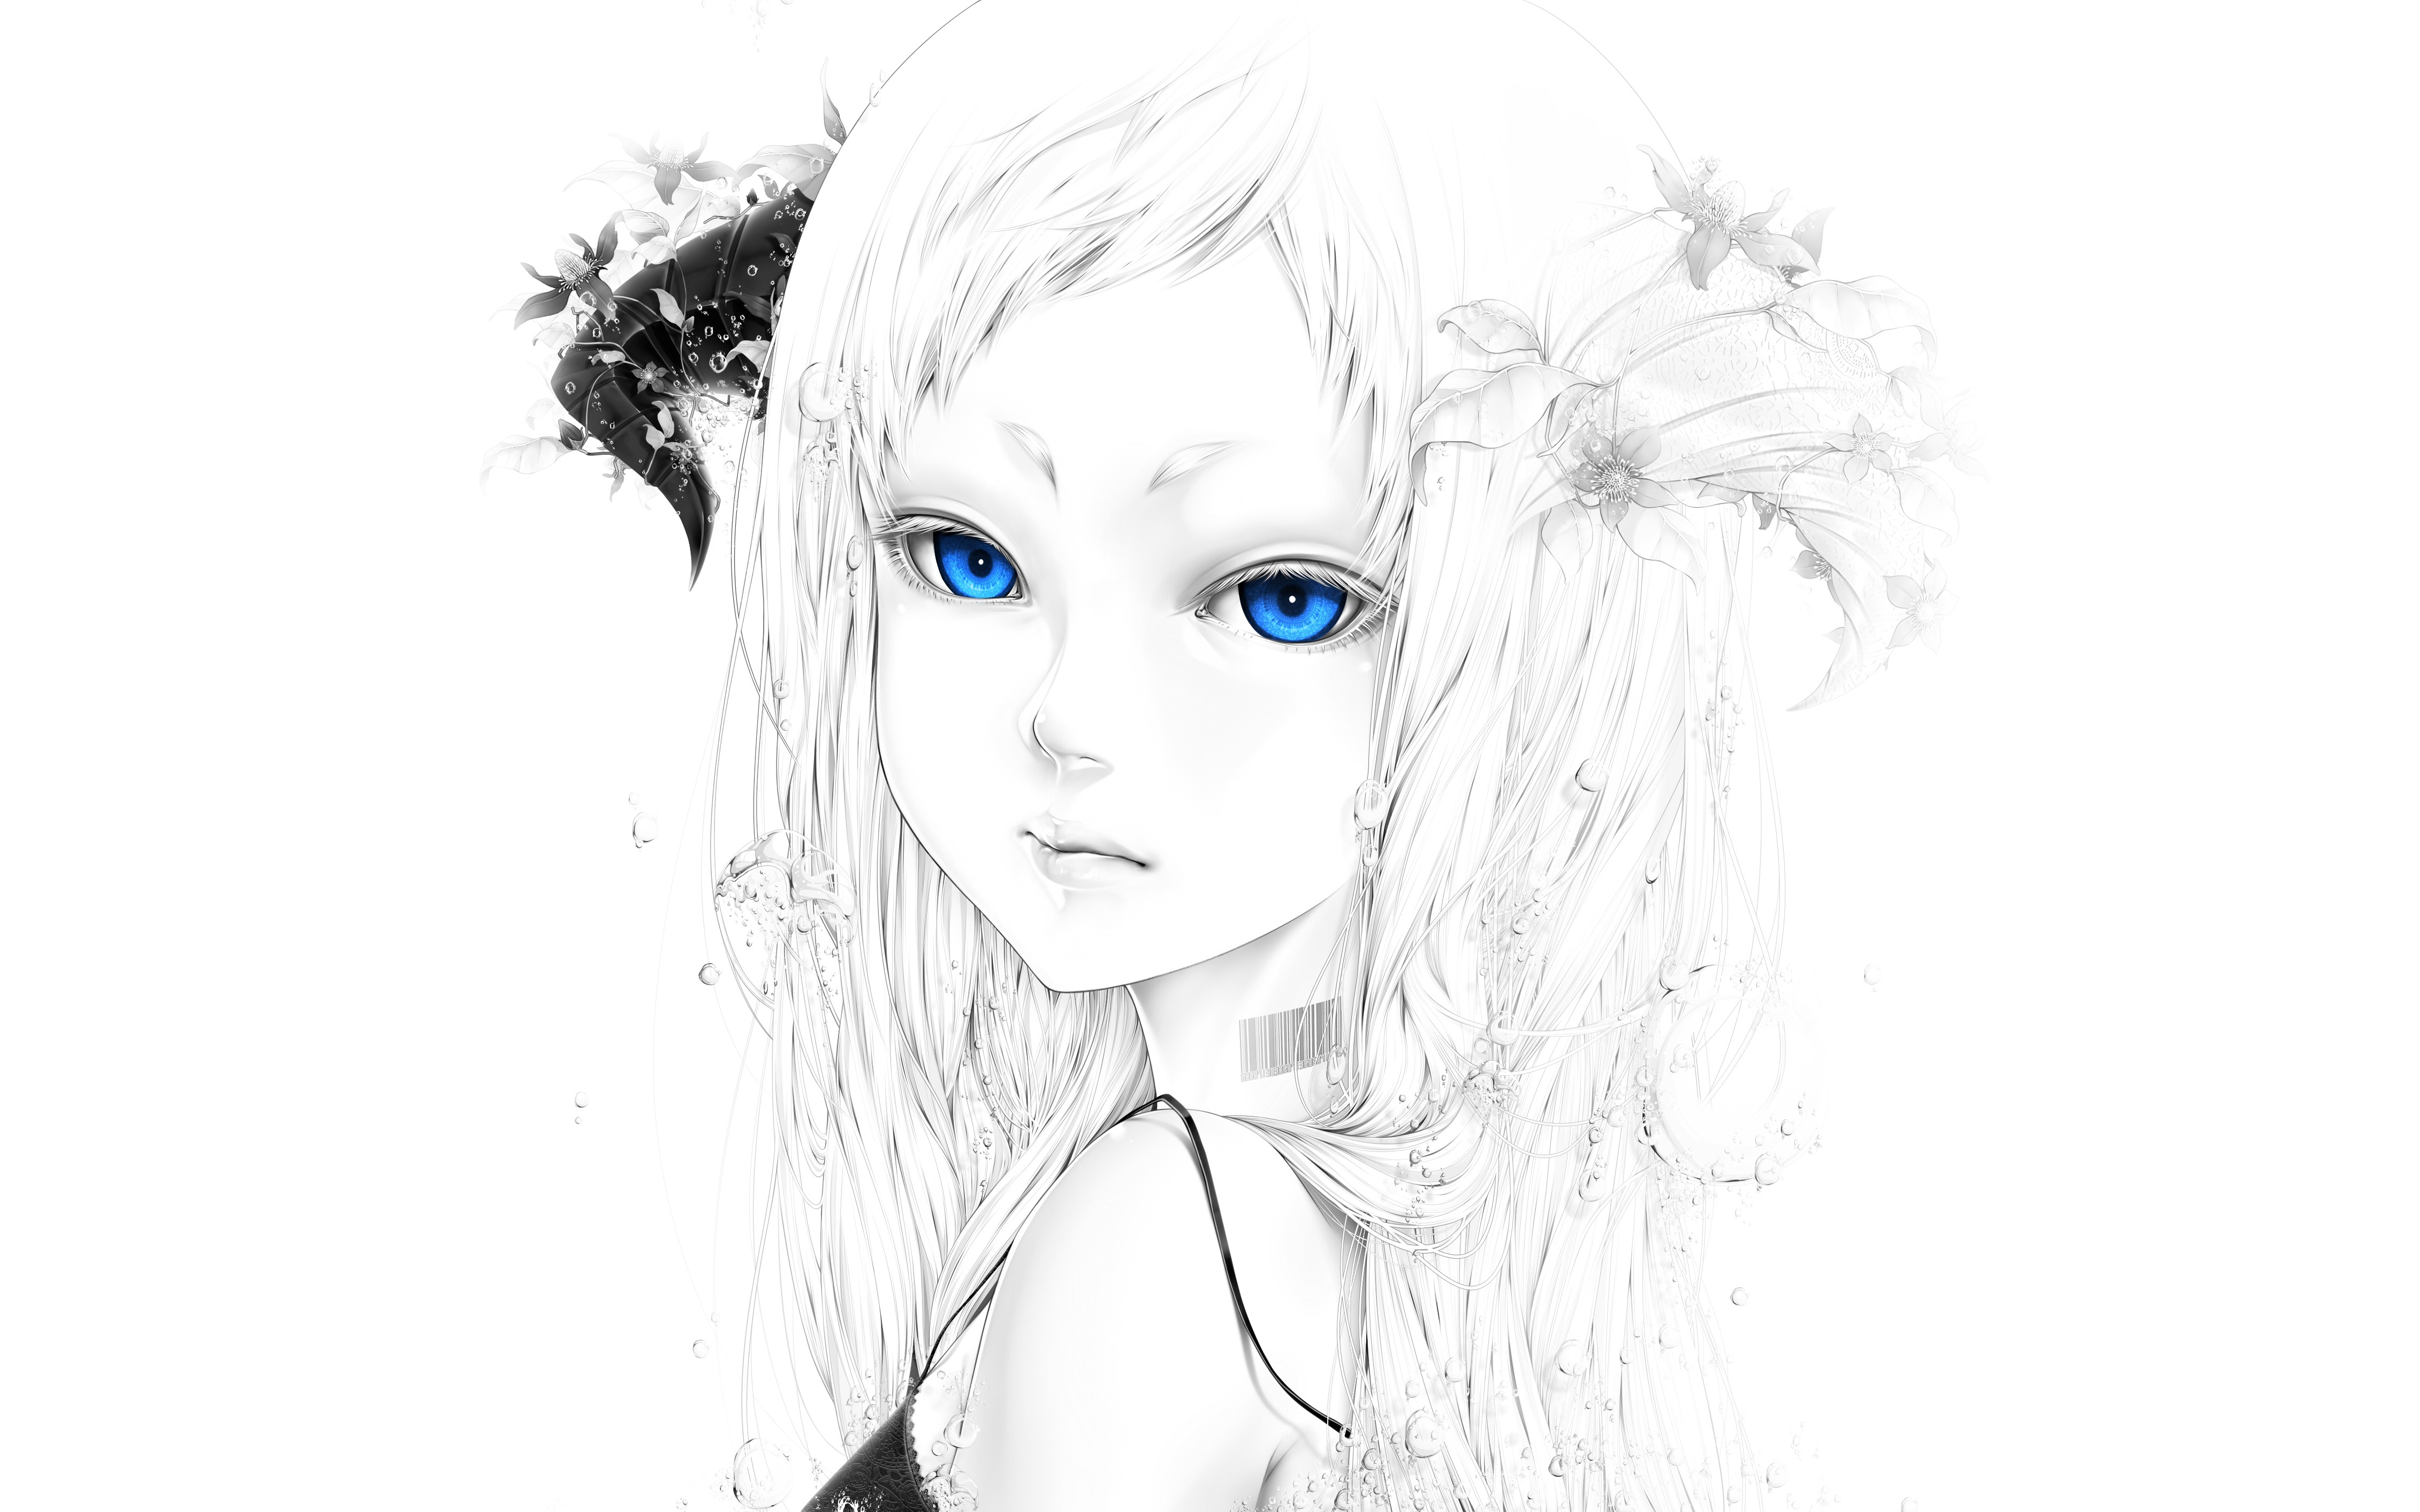 Anime 4522x2826 blue eyes flowers water horns simple background anime anime girls fantasy art fantasy girl face portrait children white background